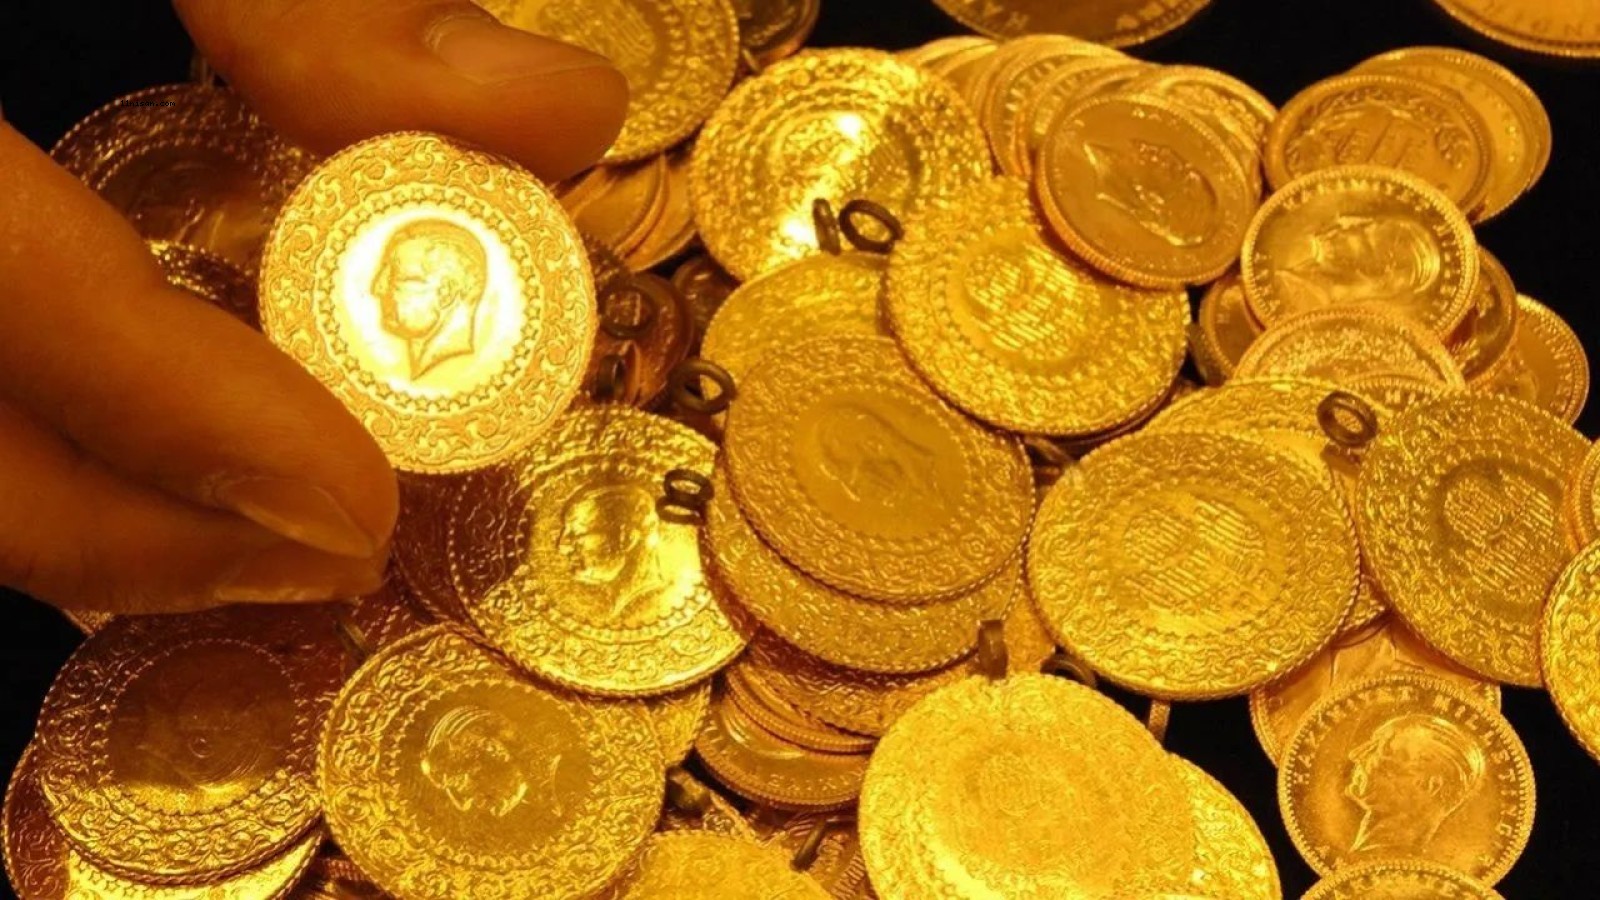 Şanlıurfa’dak kuyumcularda güncel altın fiyatları;